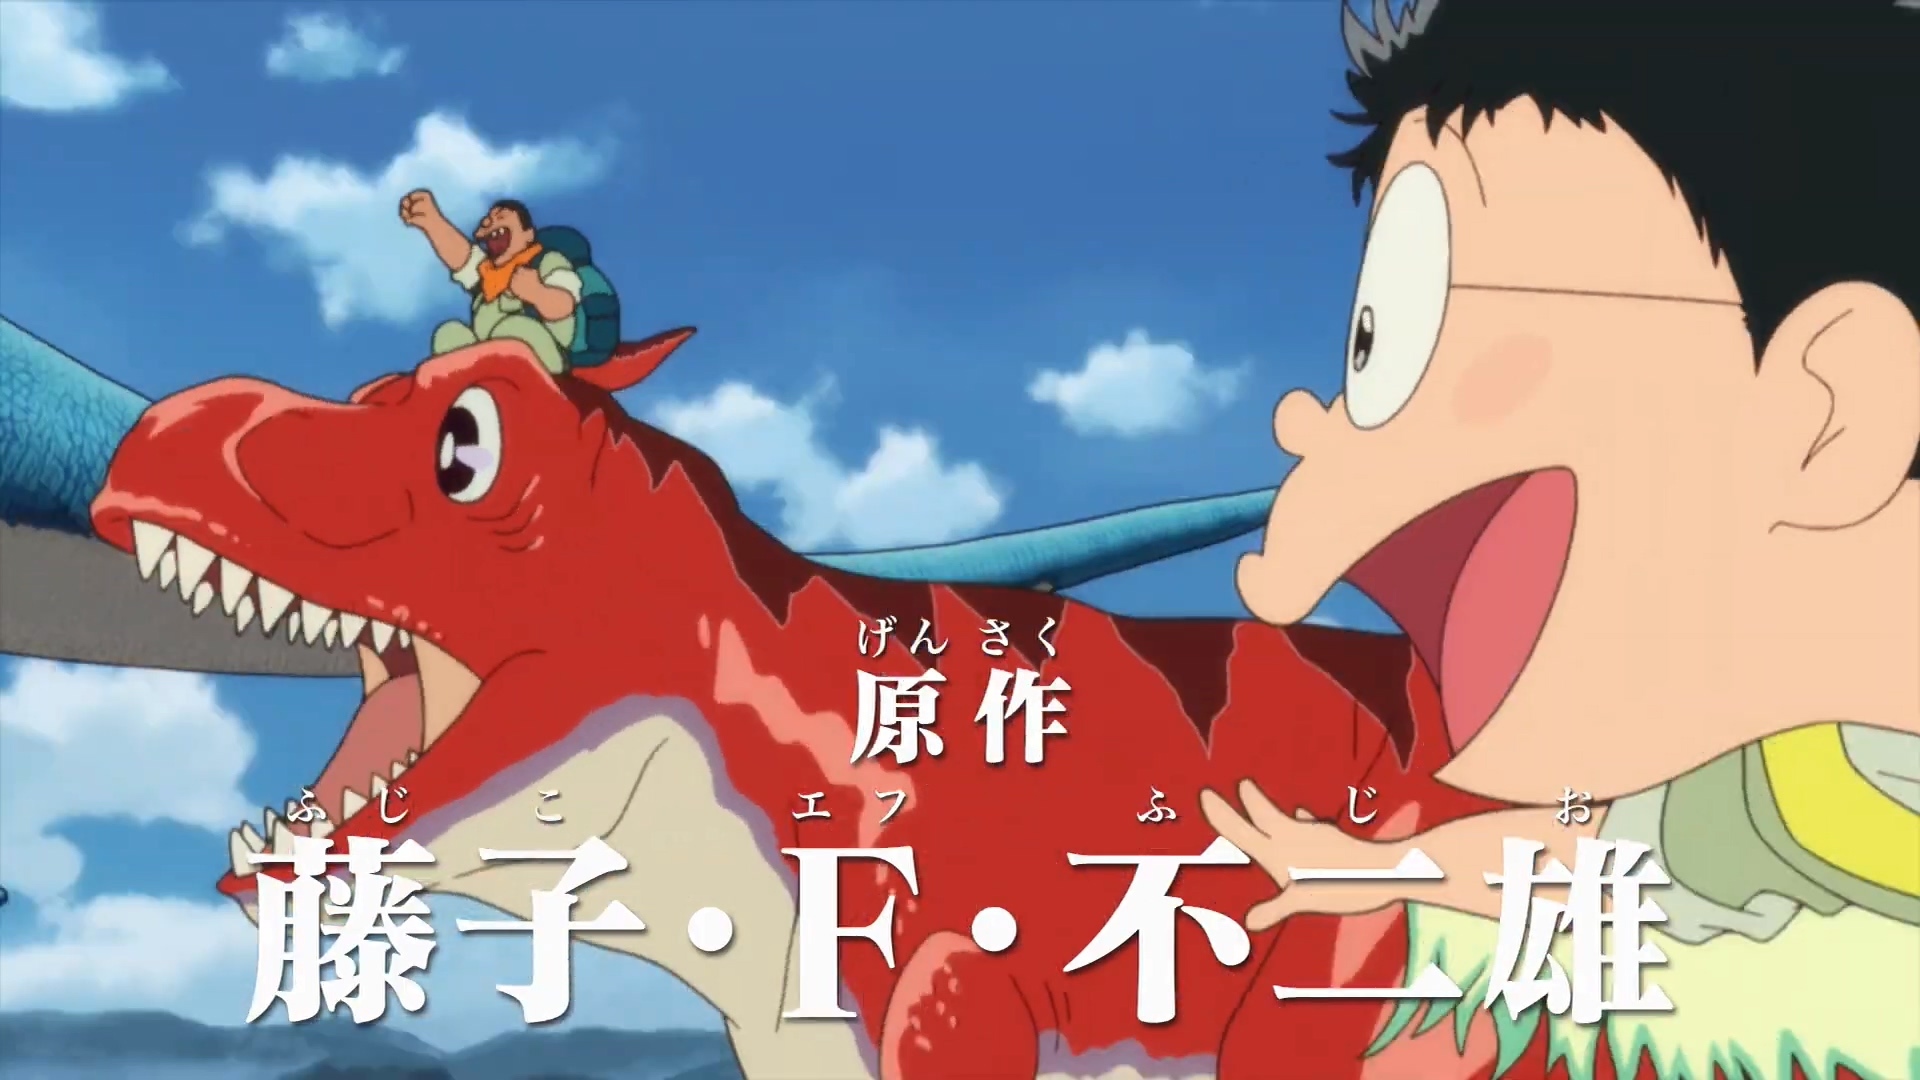 剧场版动画「哆啦A梦 大雄的新恐龙」新视觉图和特别影像公开